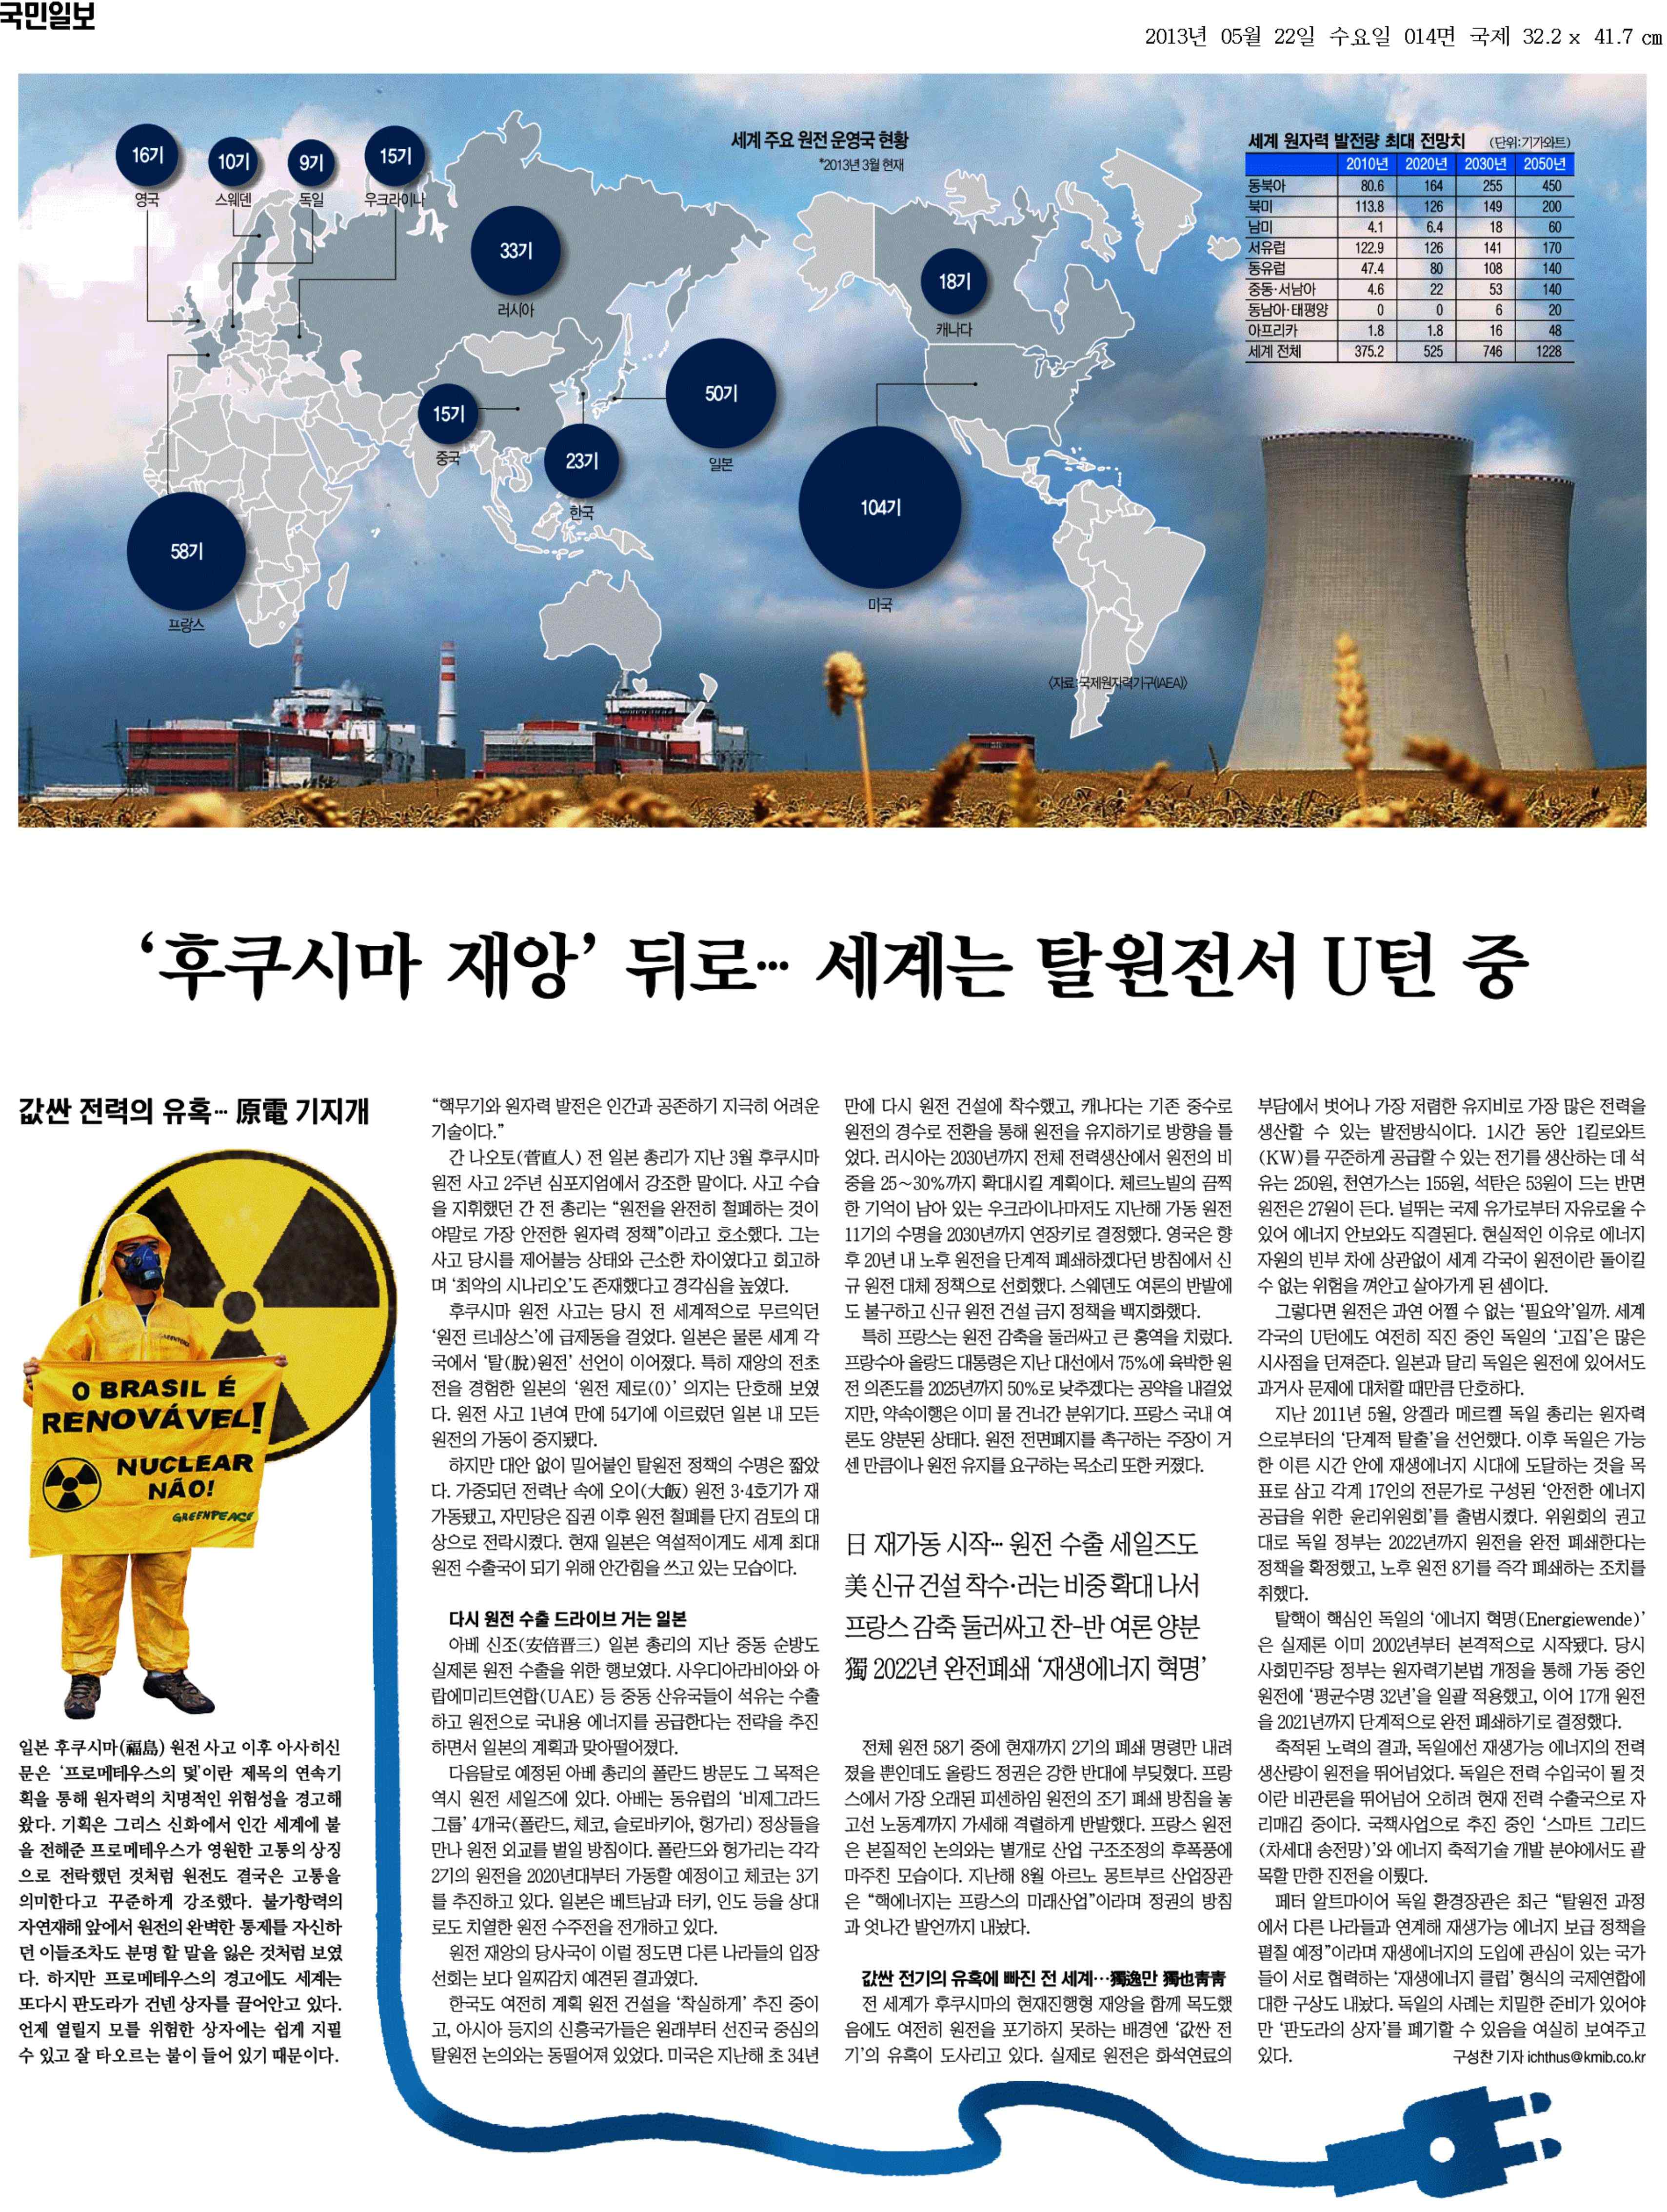 그림 16 원자력 이용국들은 원전 이용정책으로 회귀중이다[7]